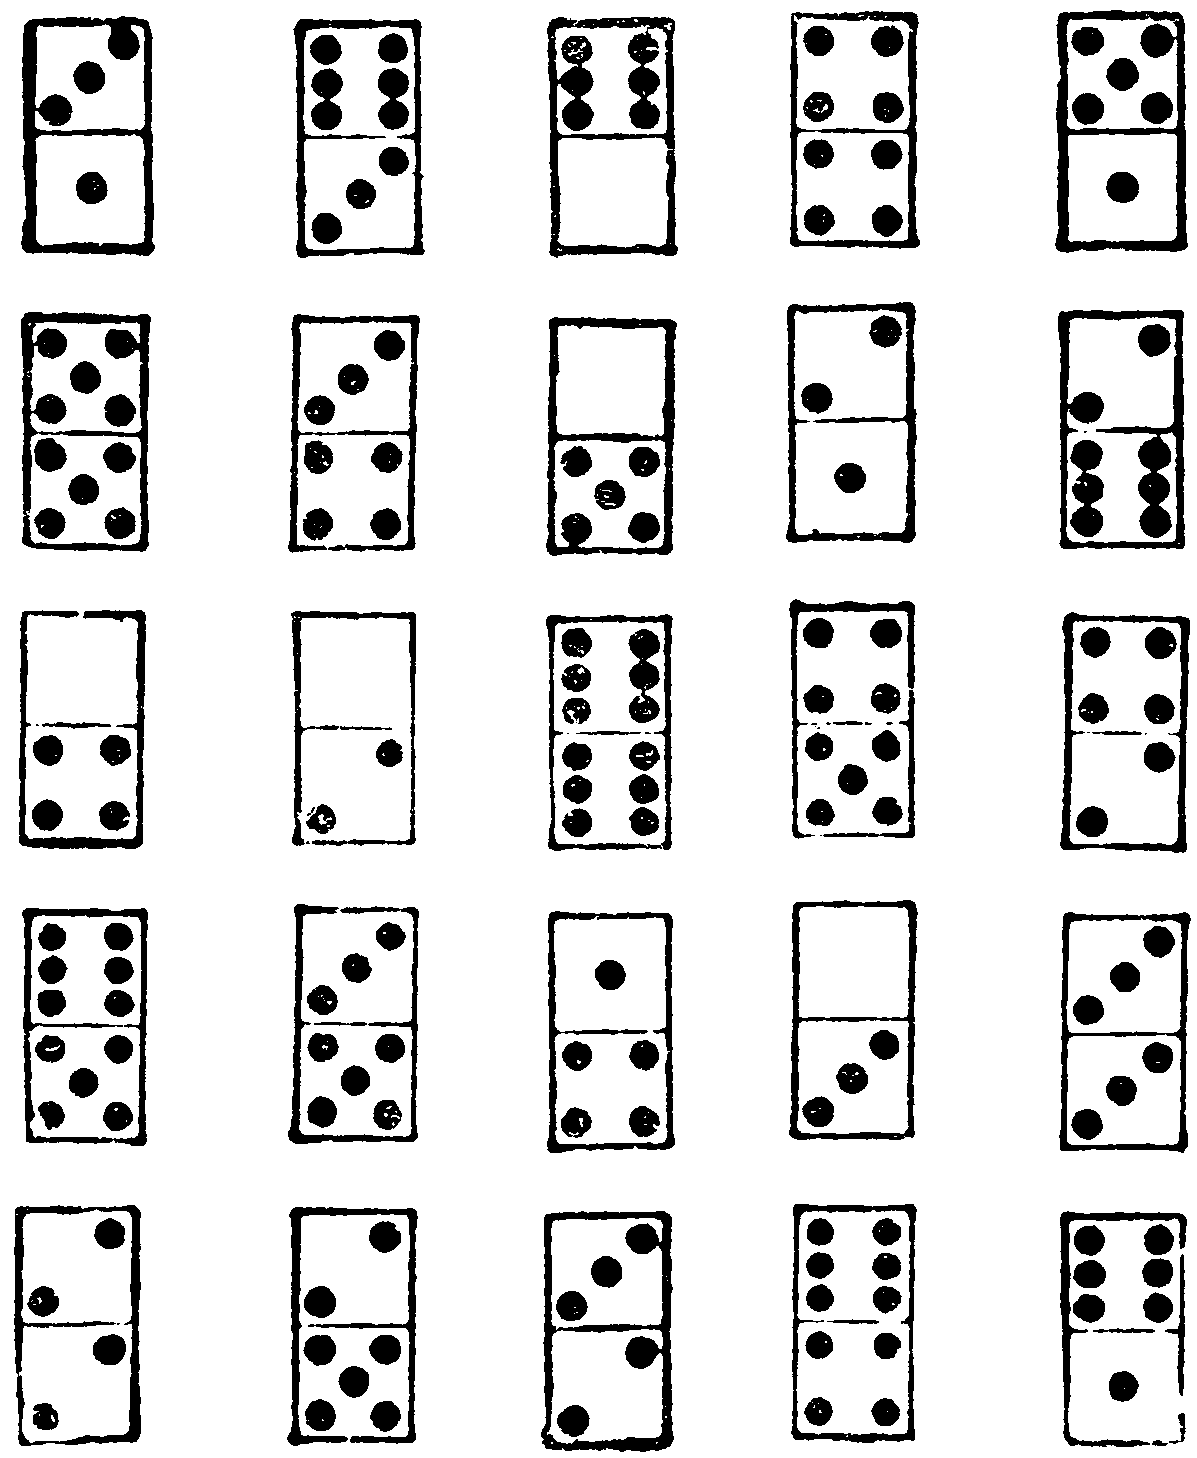 Dominoes magic square